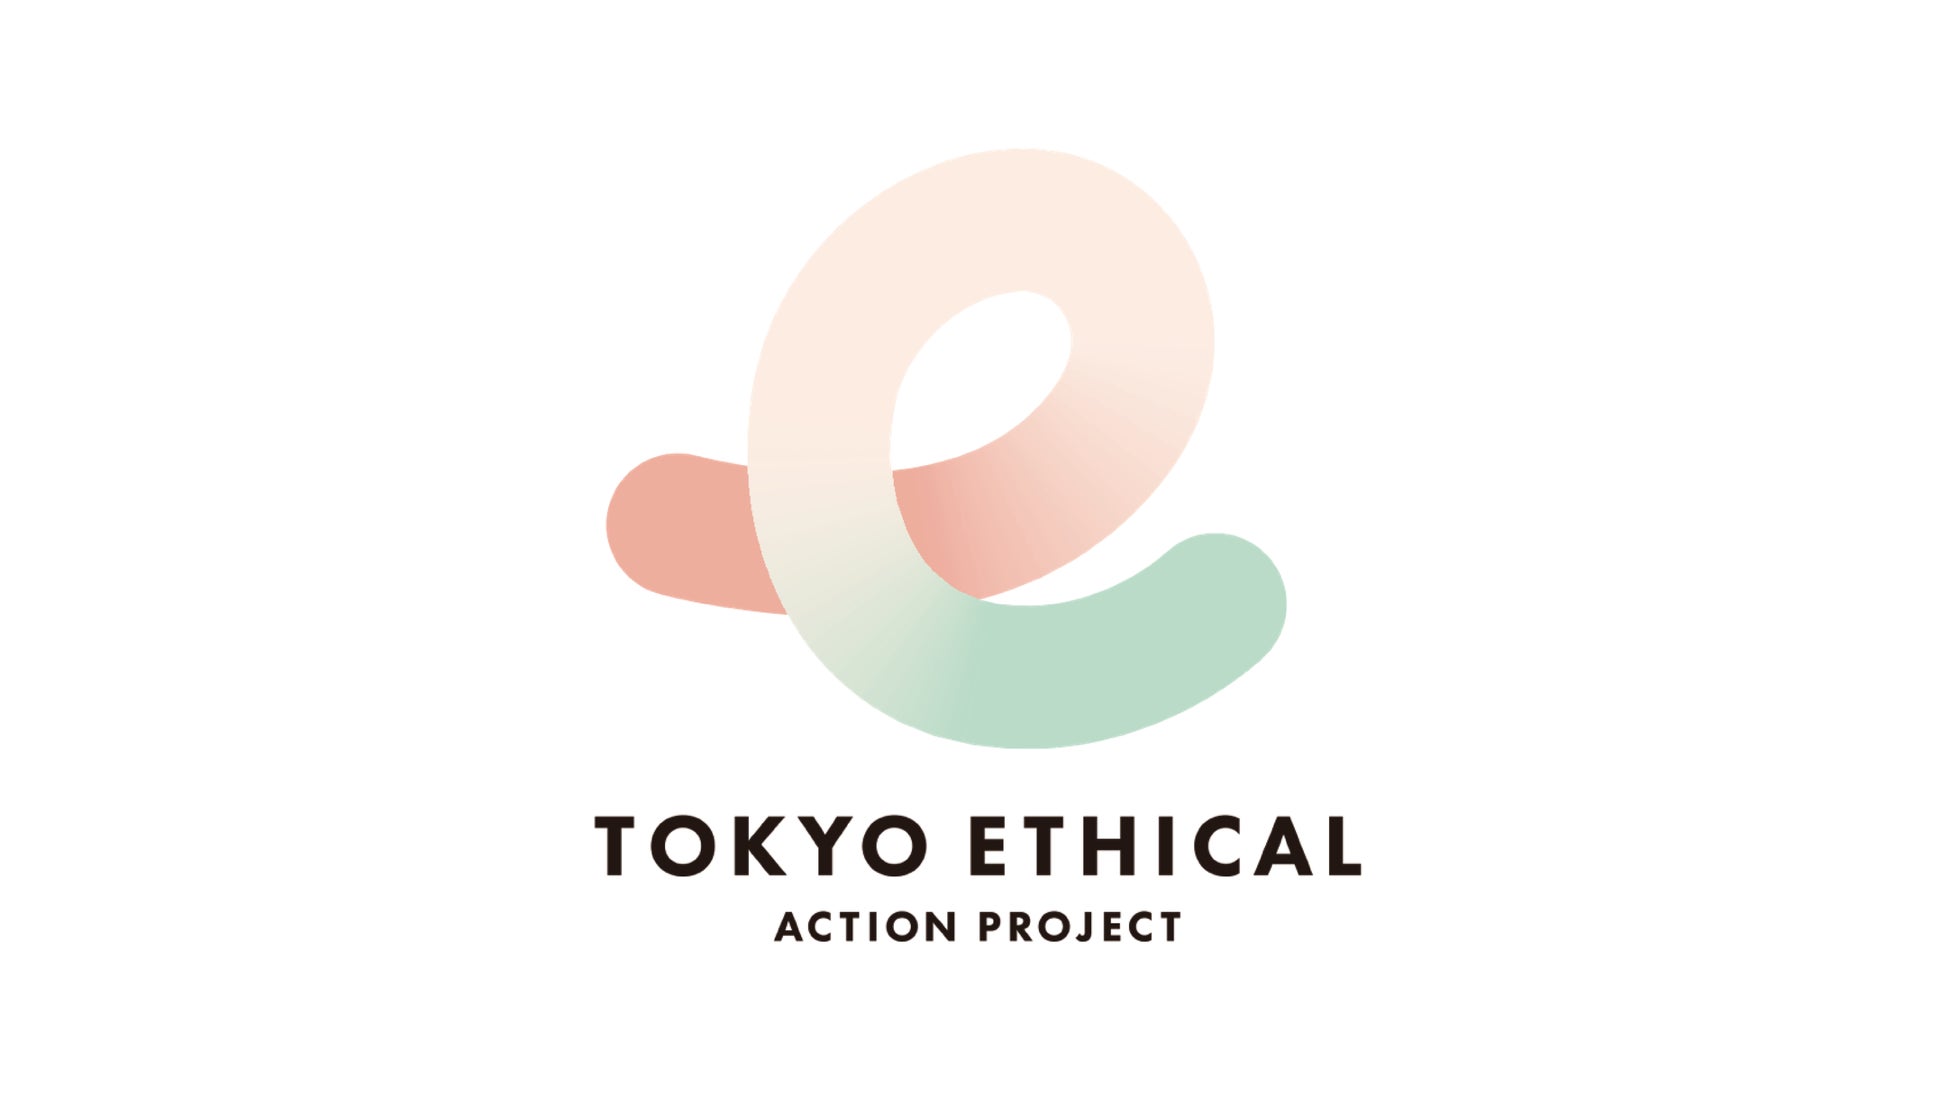 都民のエシカル消費意識向上を目指す東京都主催のプロジェクト「TOKYOエシカル」にLEOCが参加のサブ画像1_「東京エシカル」メインロゴ